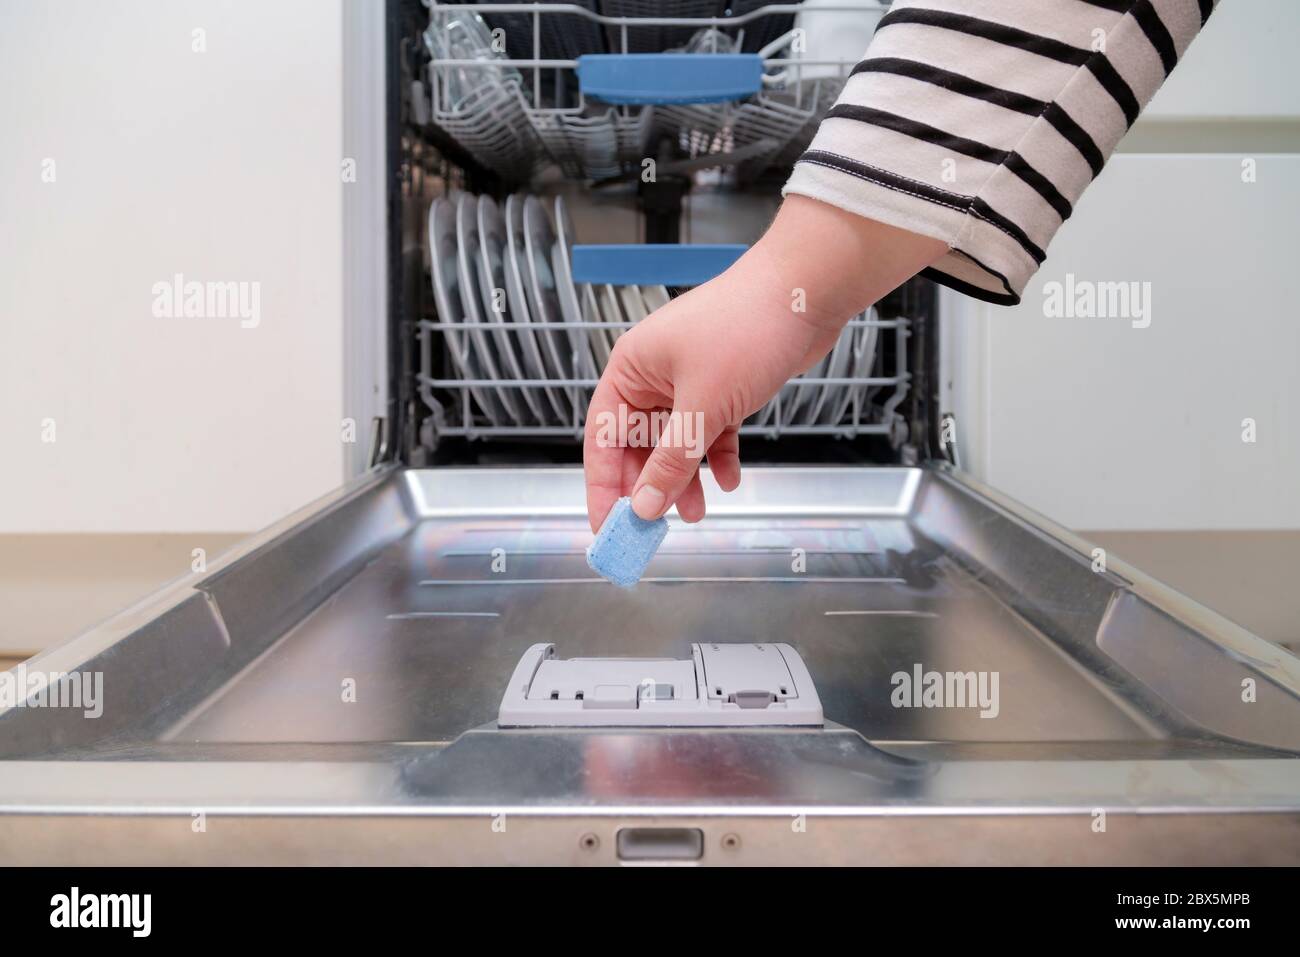 Nahaufnahme der Hand, die Seifenkapsel in die Spülmaschine in der Küche  einführt. Person, die Spülmittel in die Maschine einlegt Stockfotografie -  Alamy